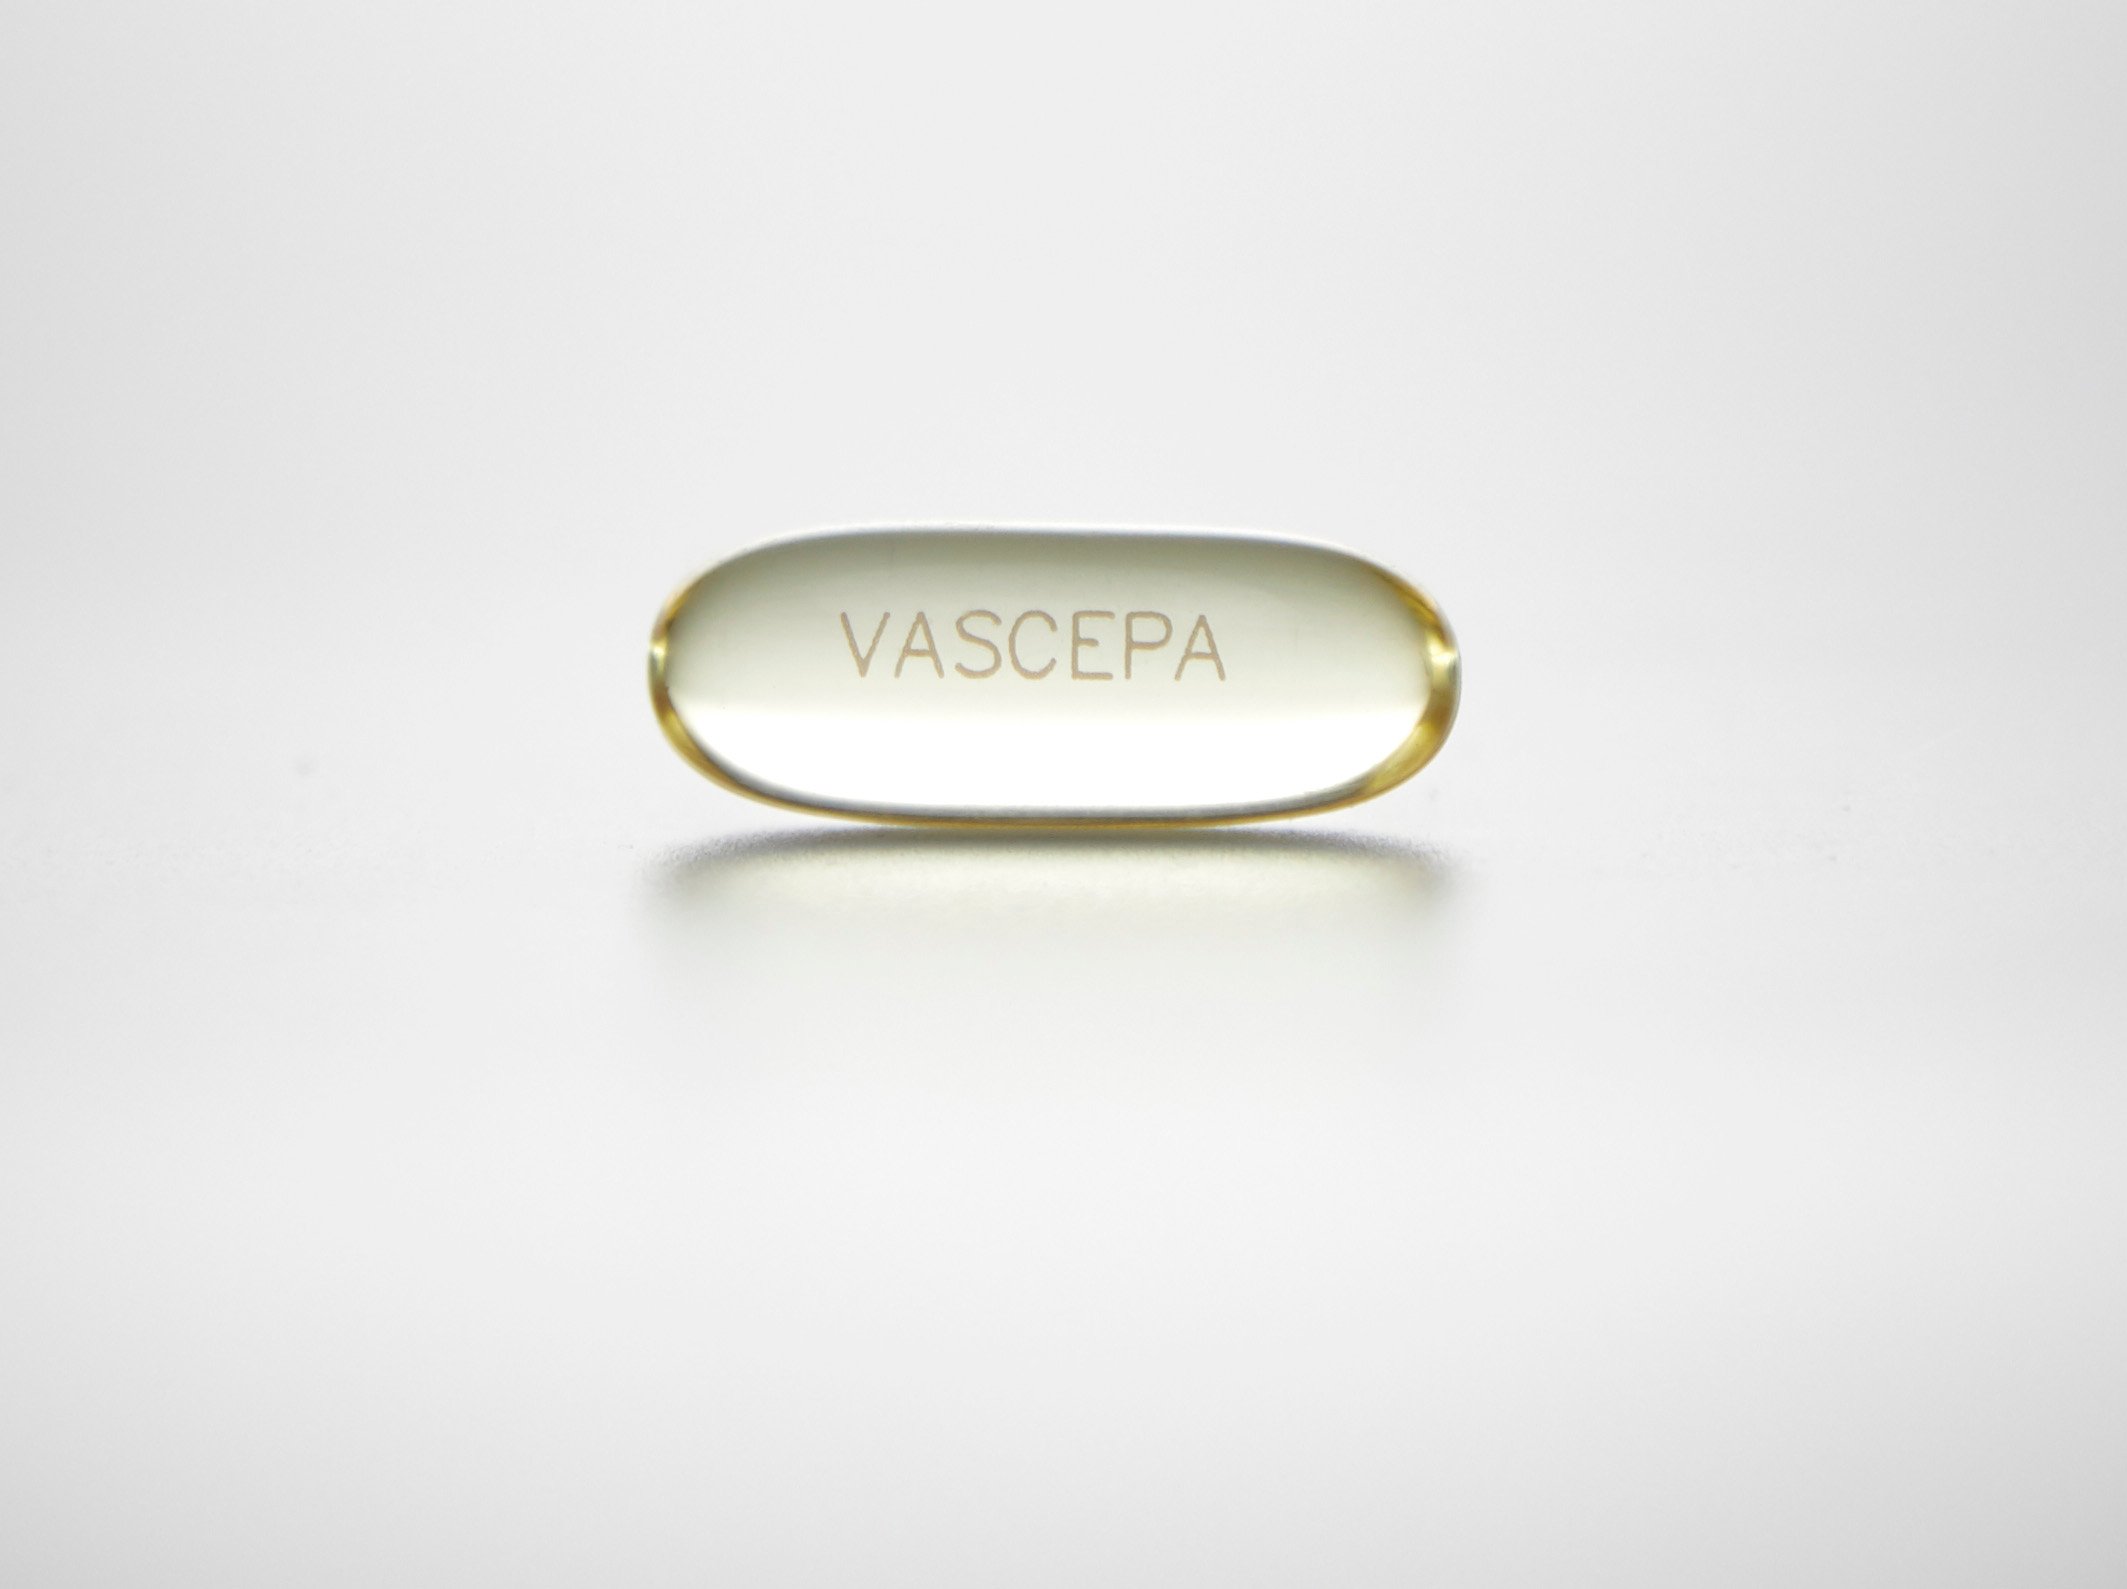 Amarin Vascepa pill